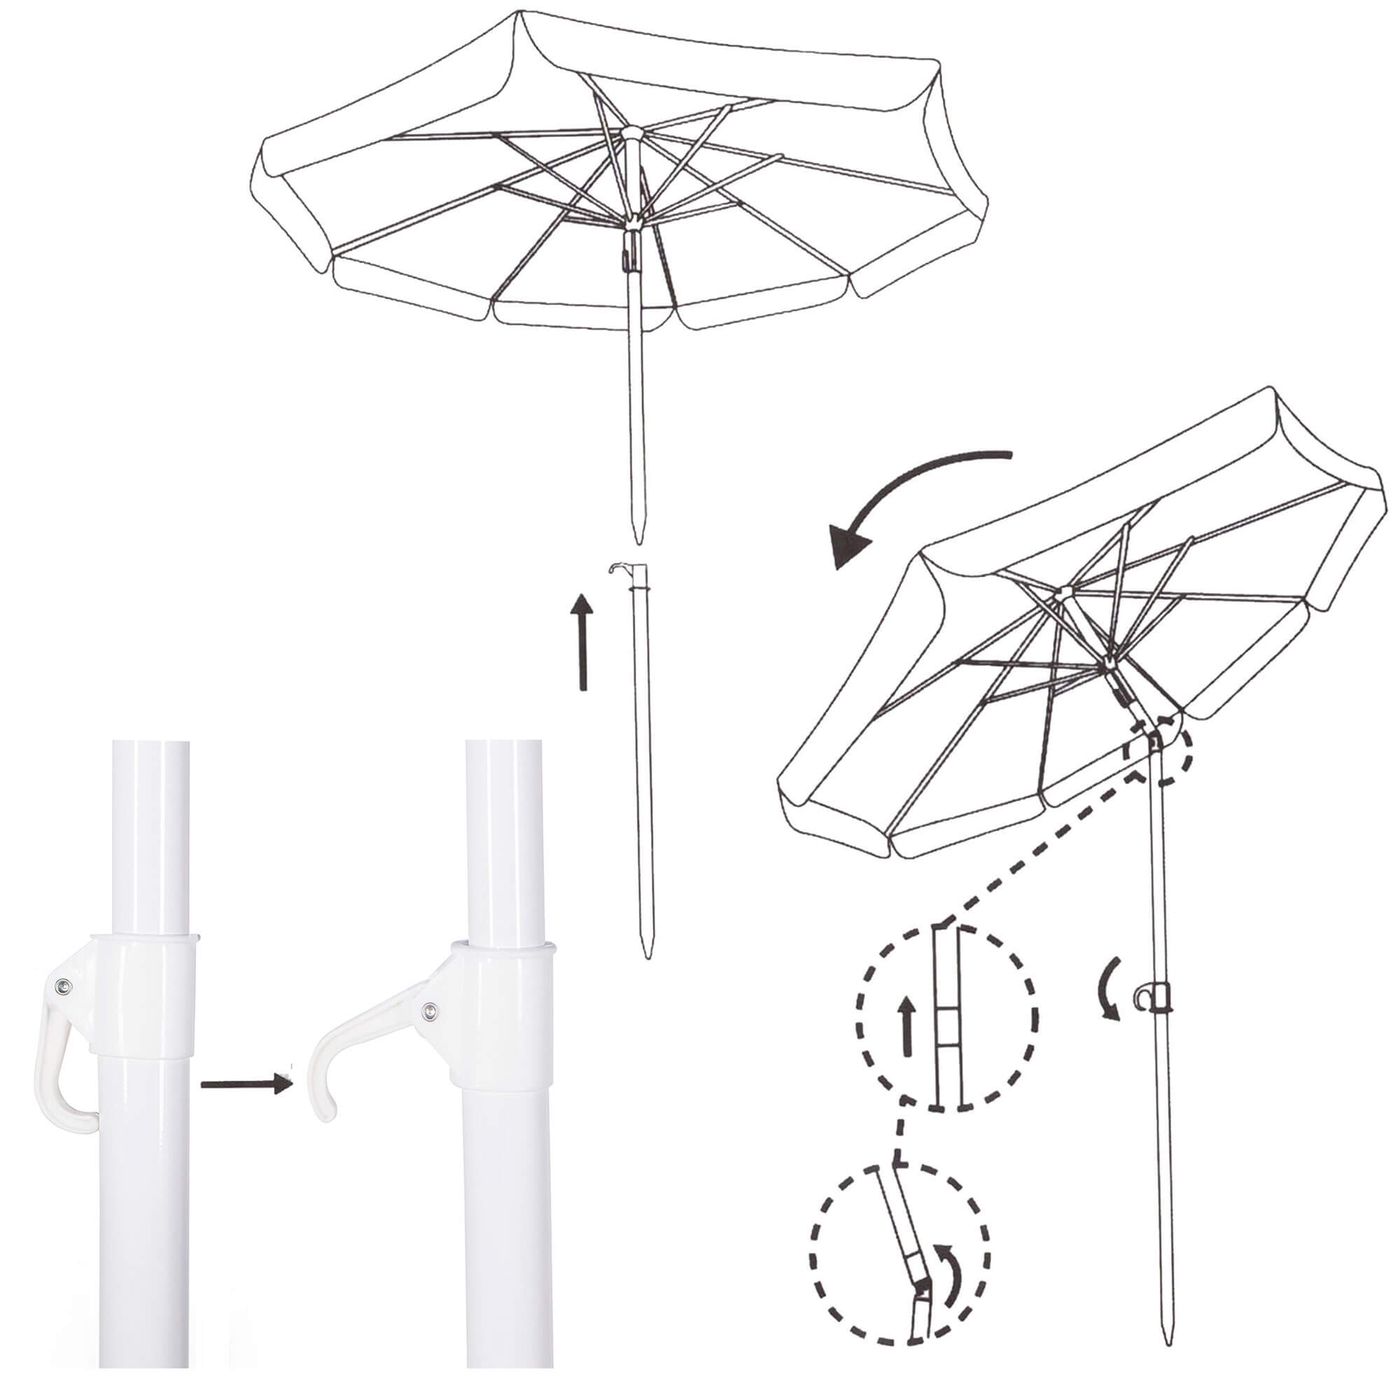 Пляжный зонт Springos 180 см с регулируемой высотой и наклоном BU0020